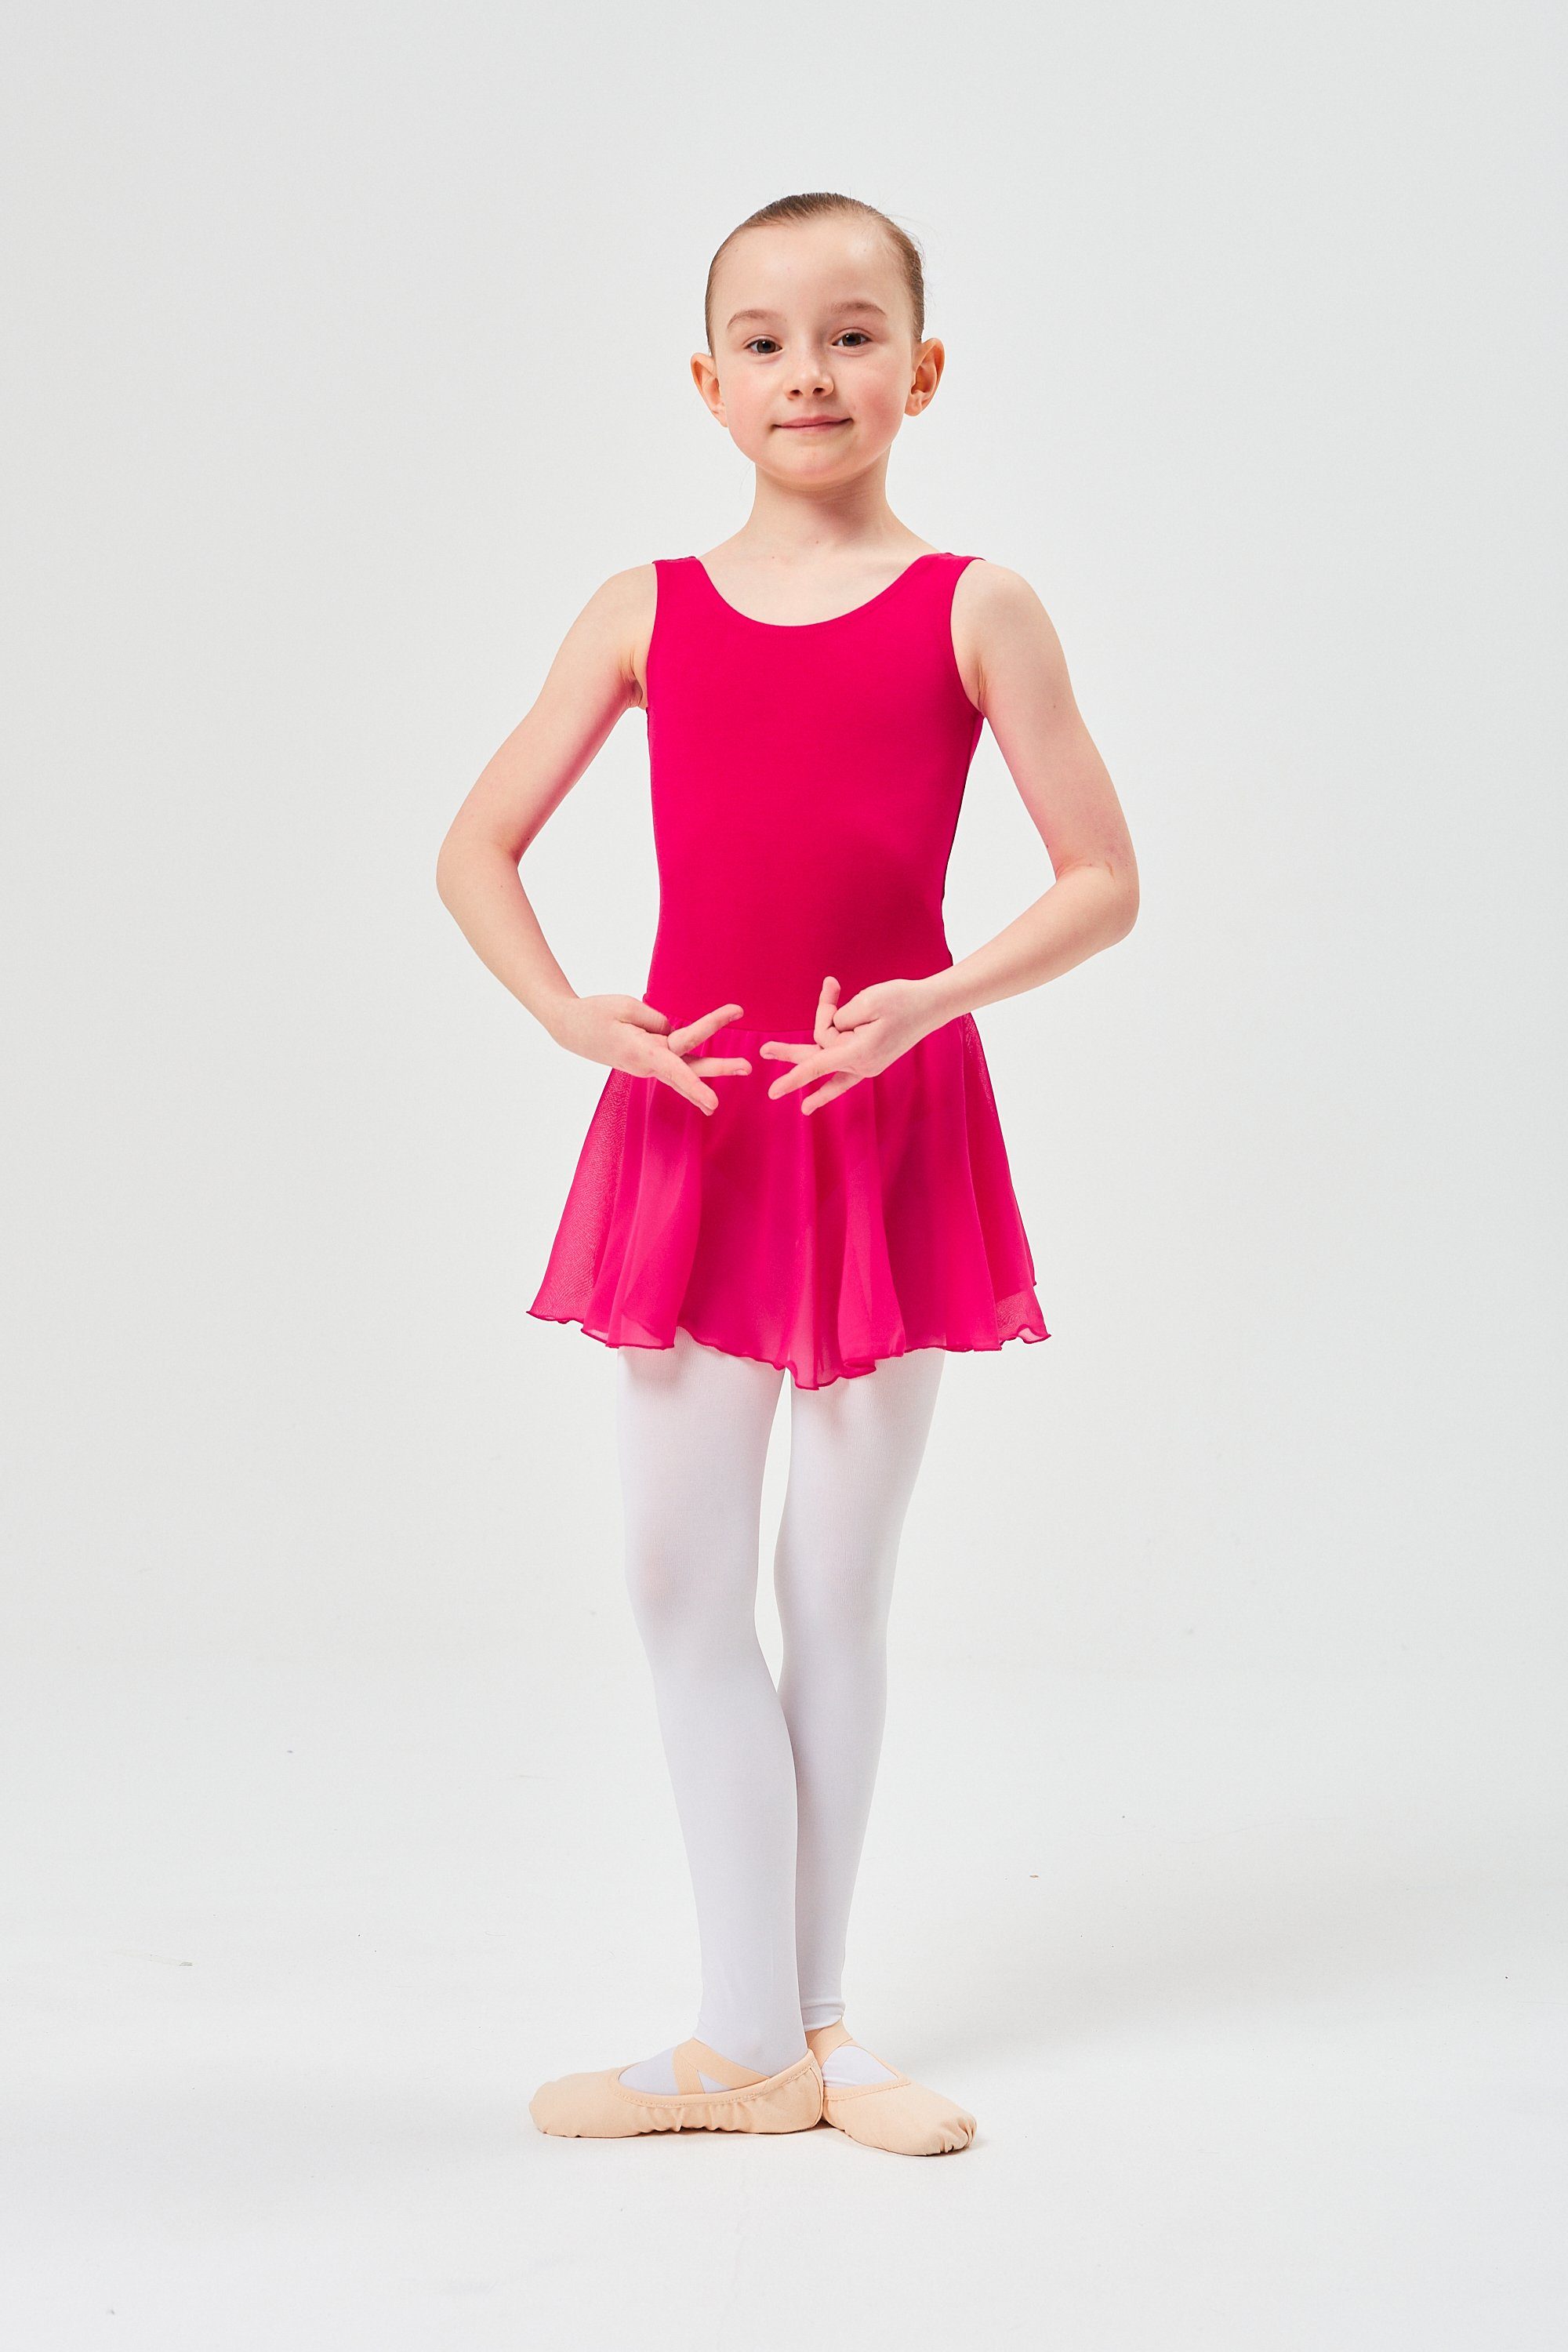 mit Baumwollmaterial Minnie Chiffonkleid Trikot Ballettkleid pink für wunderbar aus Ballett tanzmuster Chiffon Röckchen weichem Mädchen